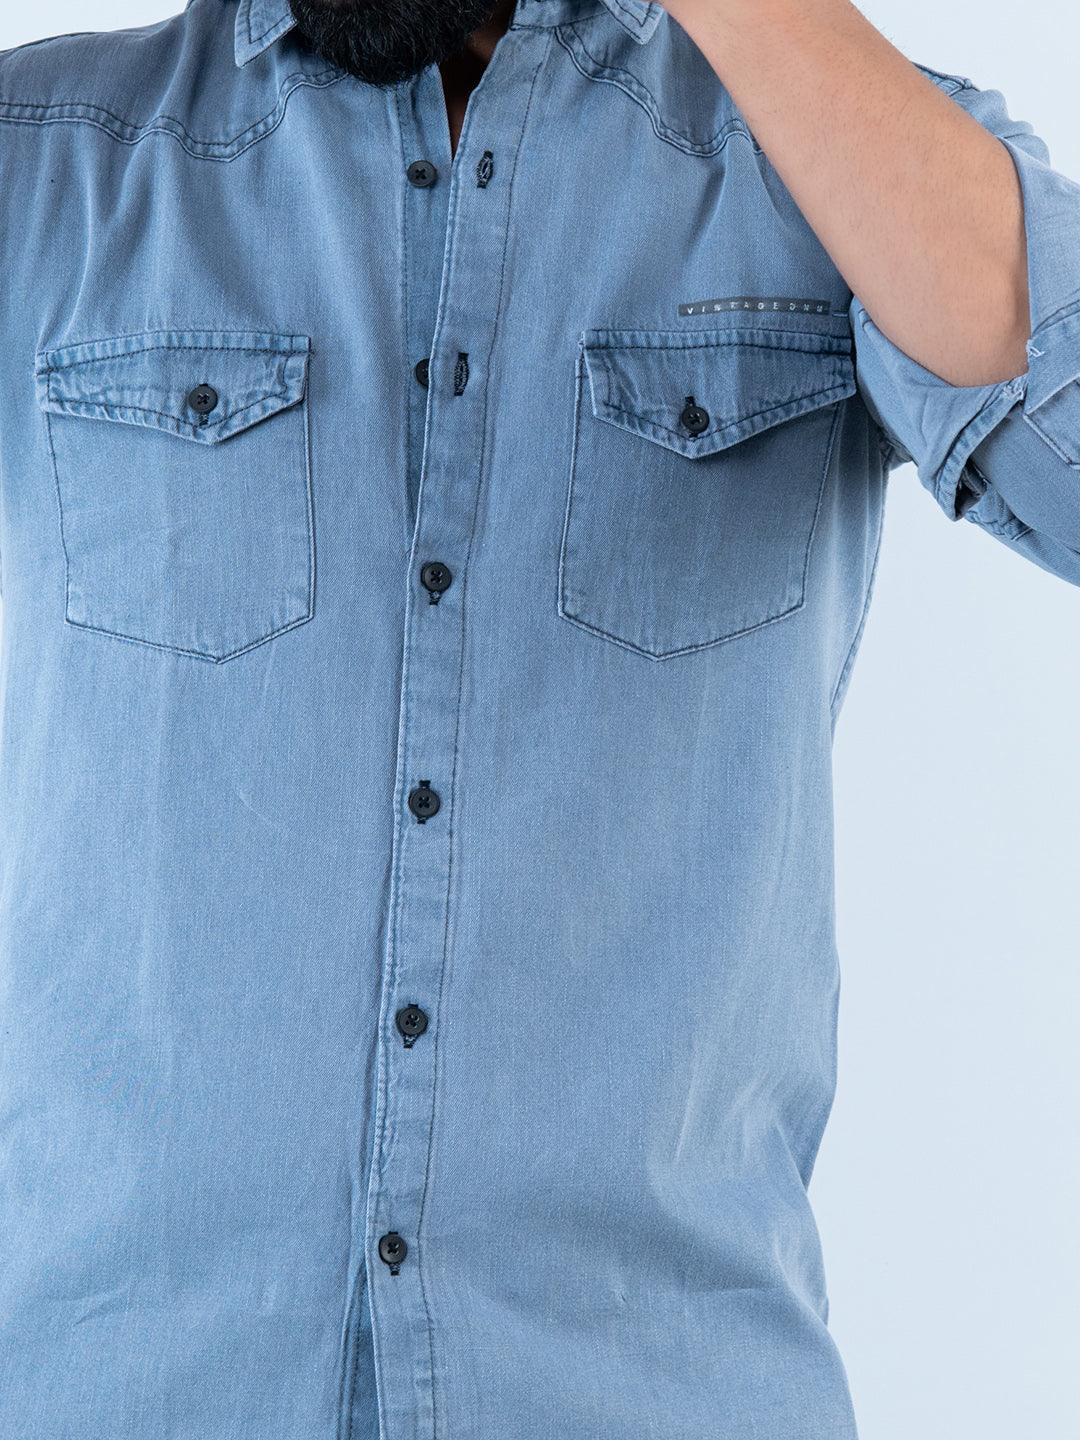 Buy Dark Blue Denim Full Sleeves Shirt for Men Online at SELECTED HOMME|  140152501